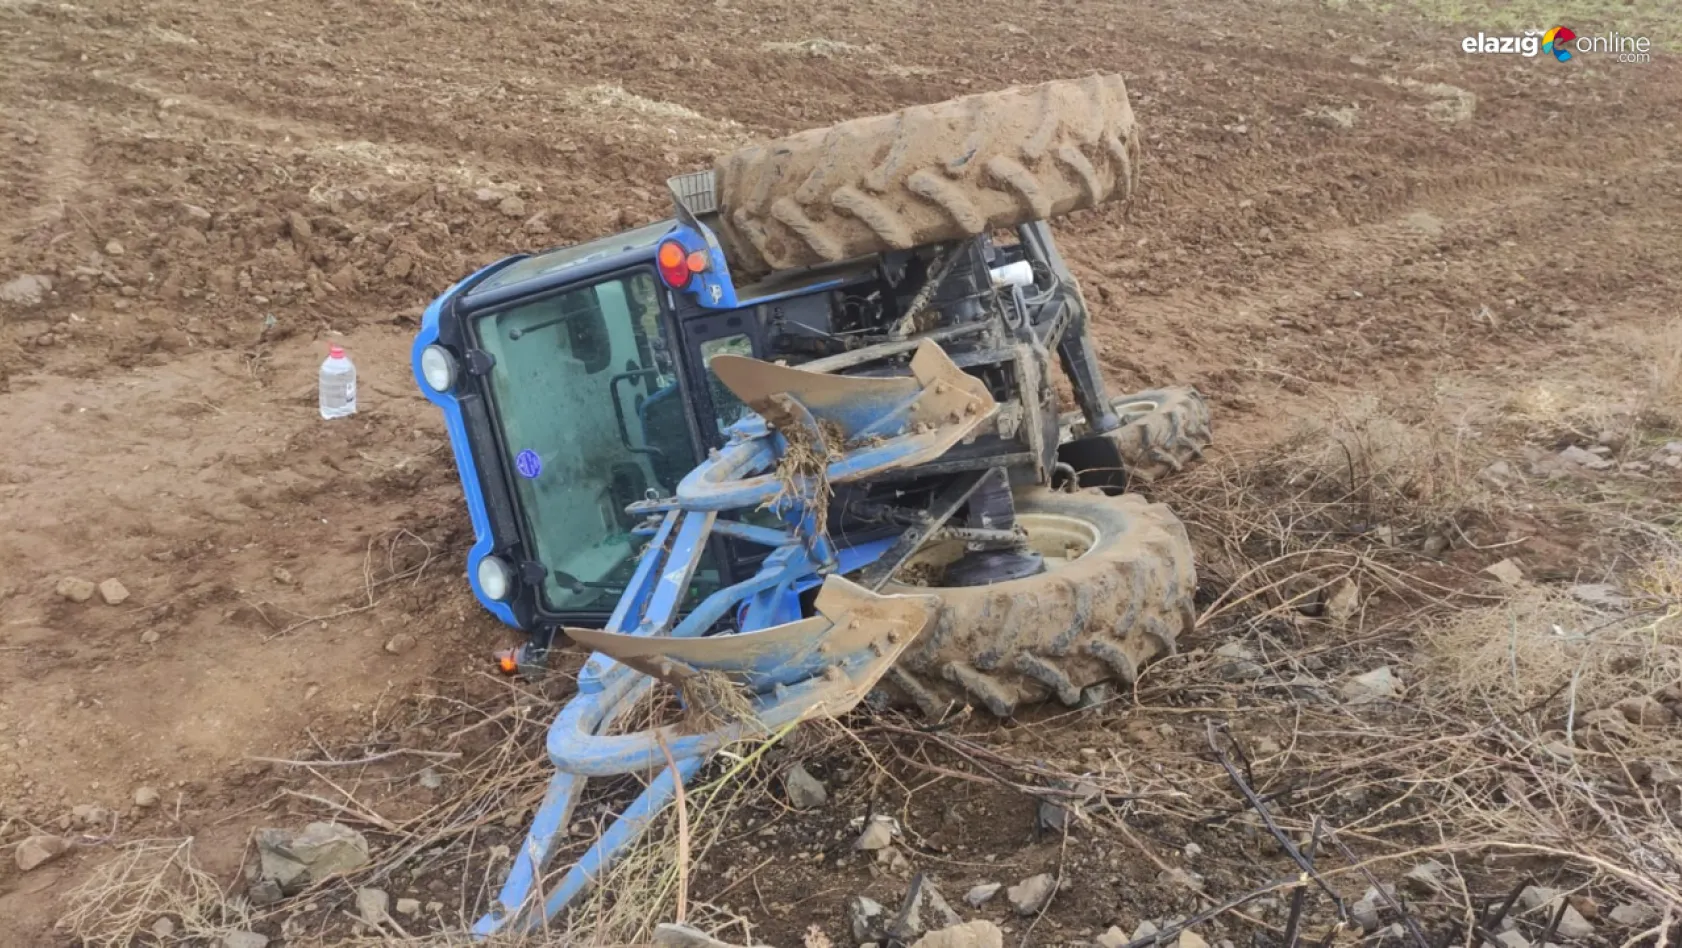 Elazığ'da traktör devrildi: 1 yaralı